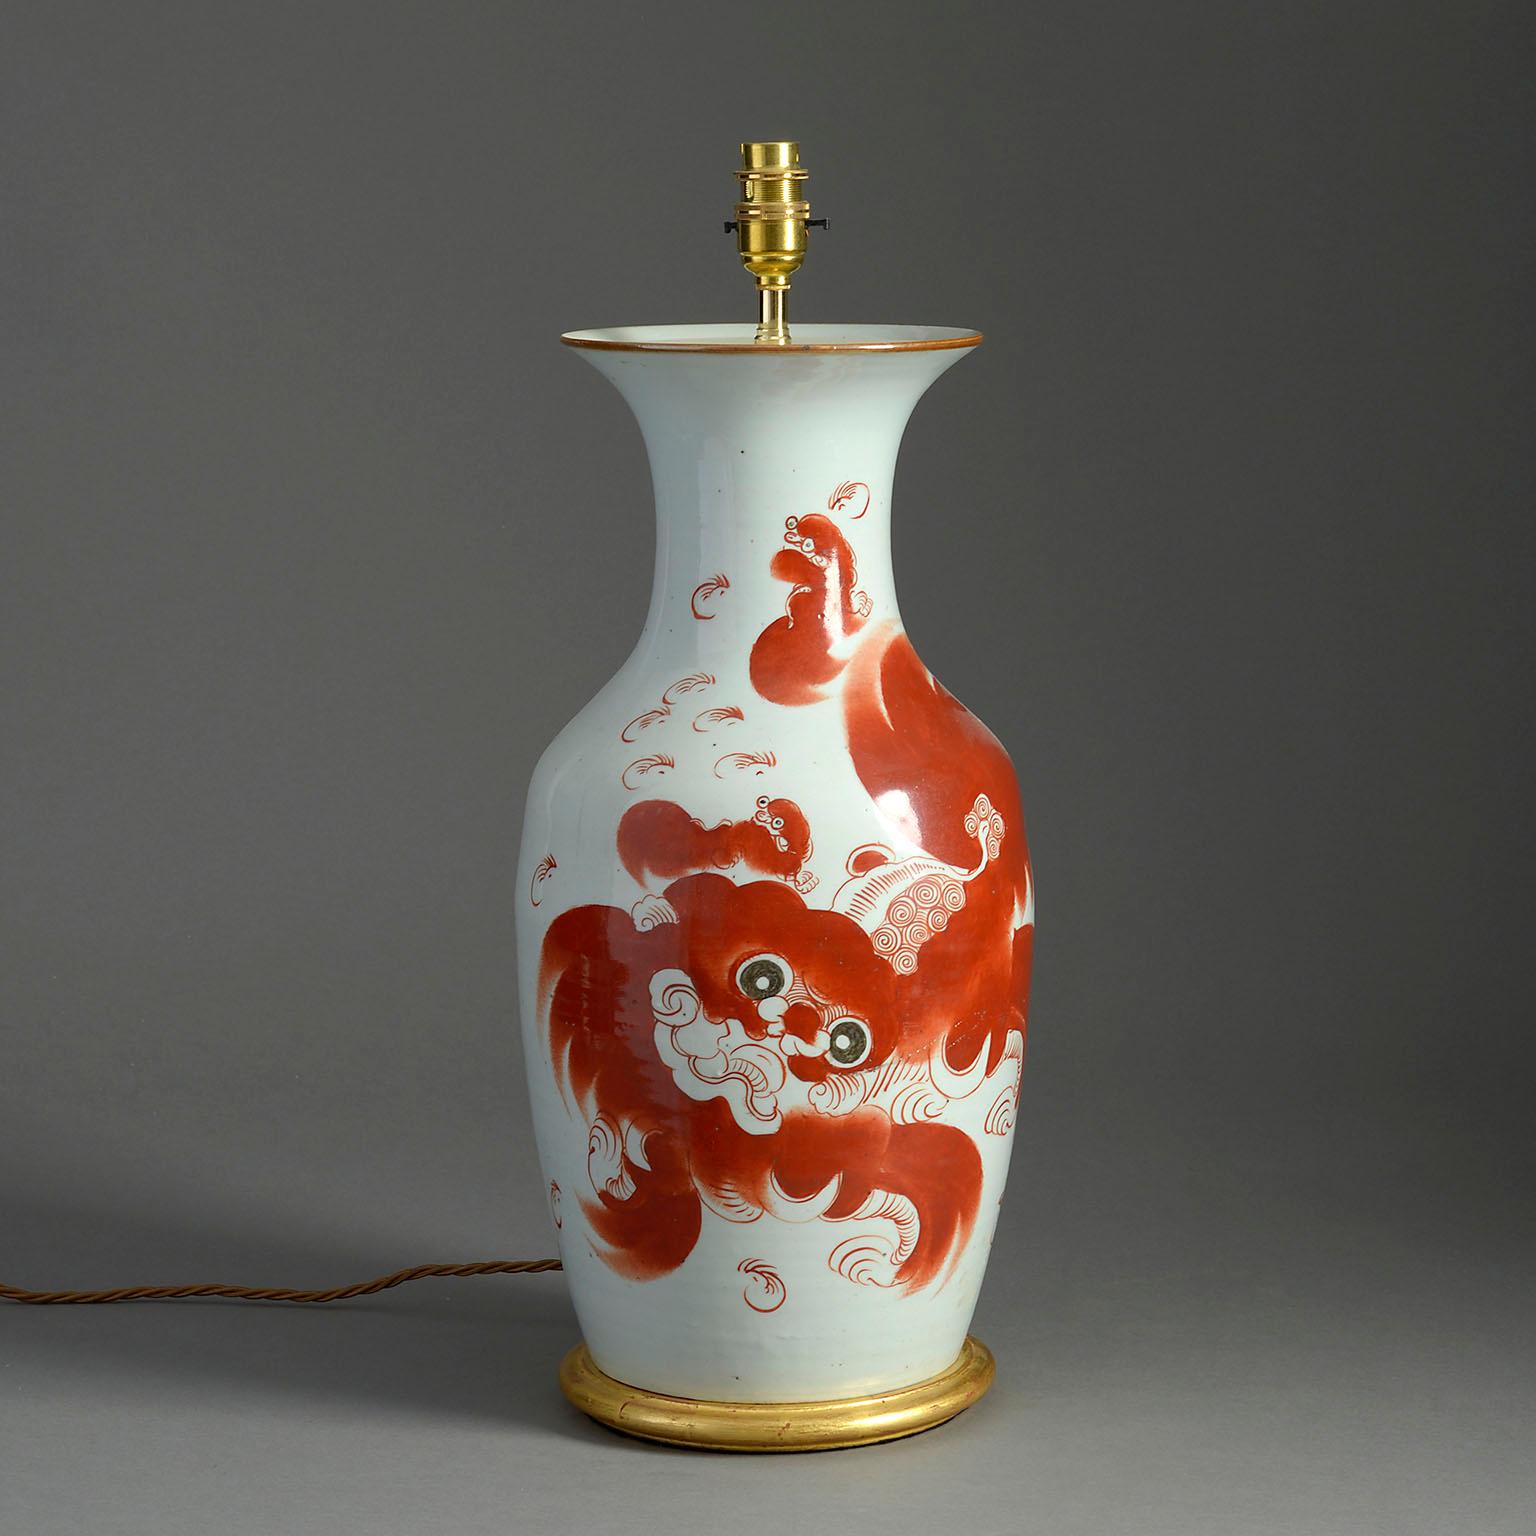 Jahrhundert Porzellan Baluster Vase von guter Größe, mit einem roten Hund von fo auf weißem Grund, die Rückseite mit chinesischen Schriftzeichen verziert. Auf einem gedrechselten Goldholzsockel als Tischlampe montiert.

Die Abmessungen beziehen sich